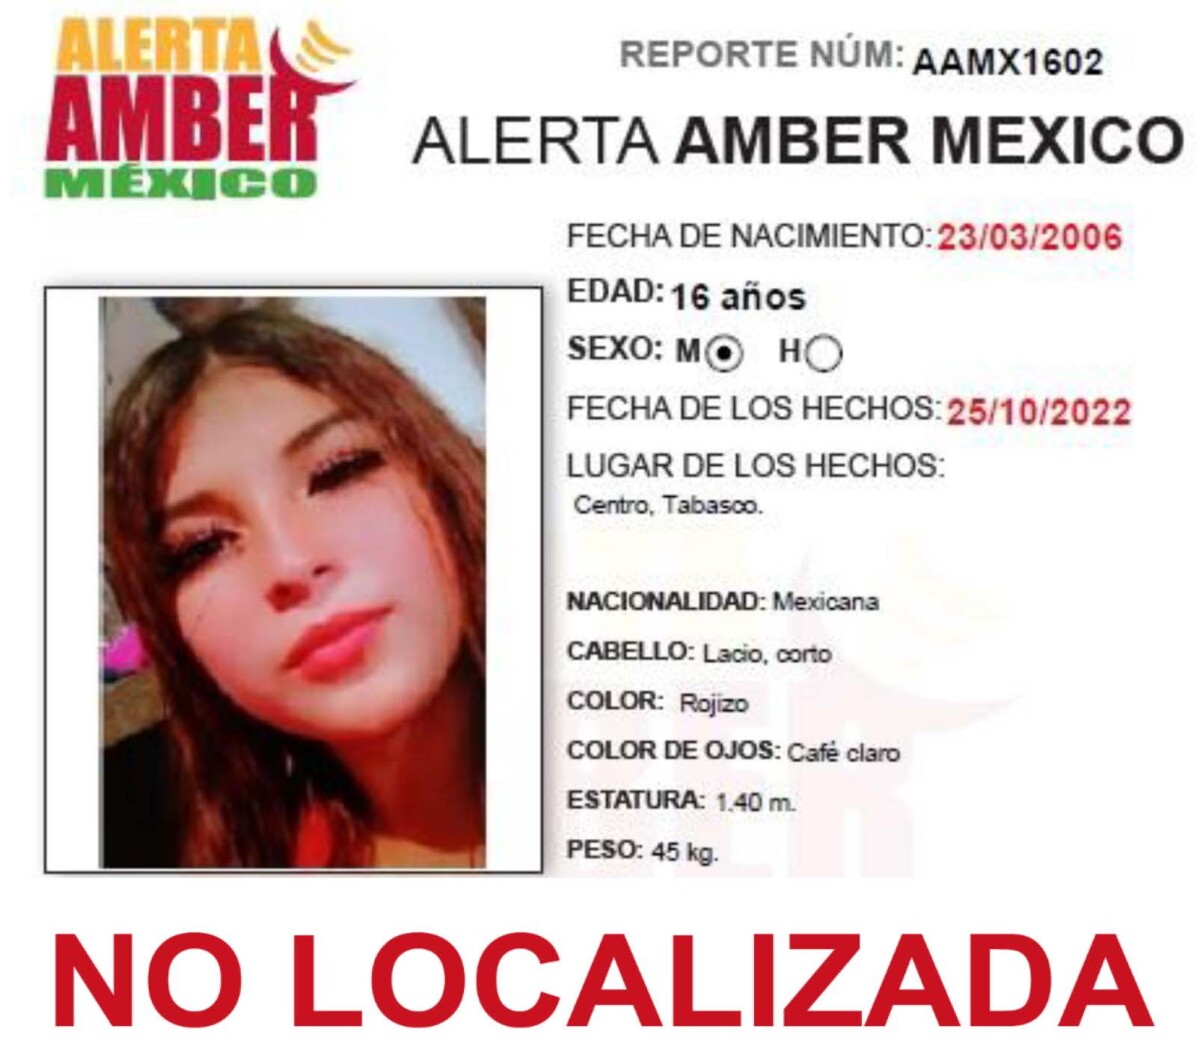 Alerta Amber Maria del Carmen